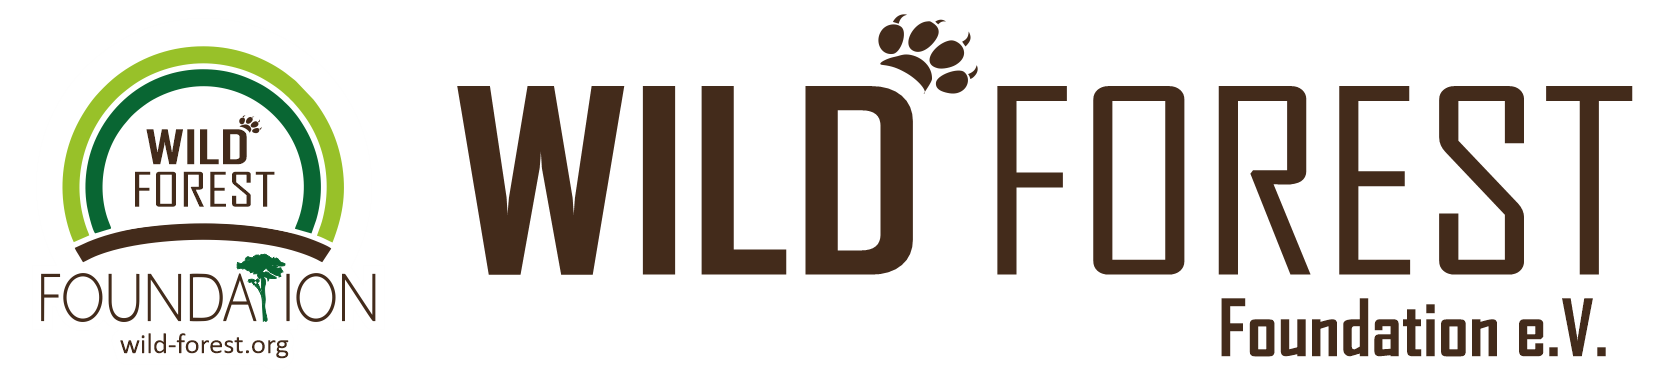 Wild Forest Foundation e.V.